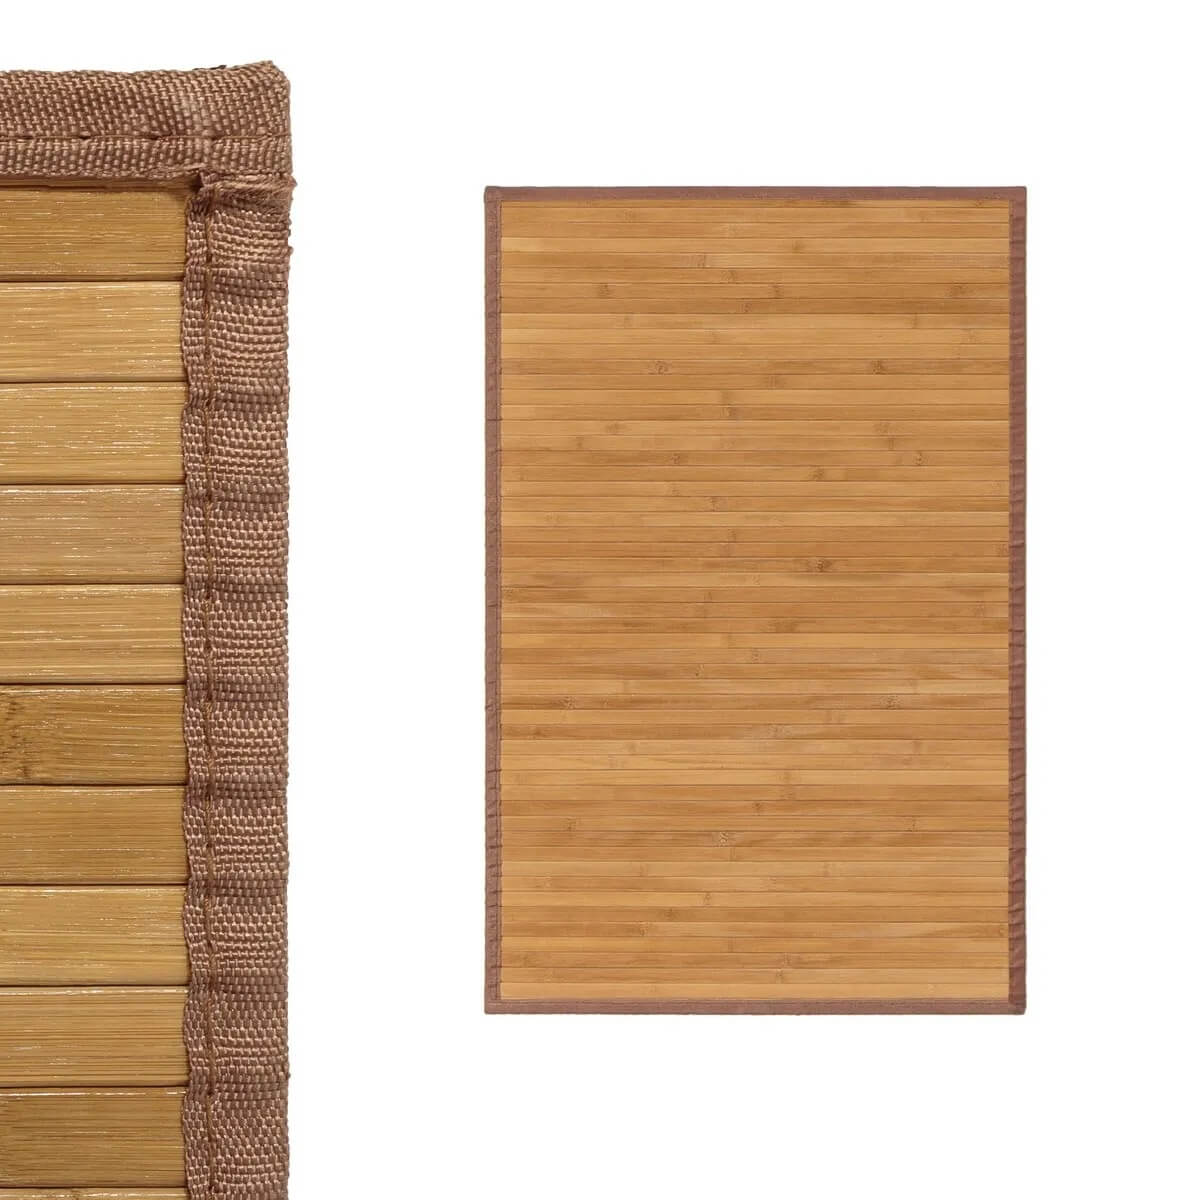 Servilletero de madera rústico 12,5 x 21,7 x 14,5 cm, porta servilletas,  soporte para colocar servilletas, diseño tradicional, m